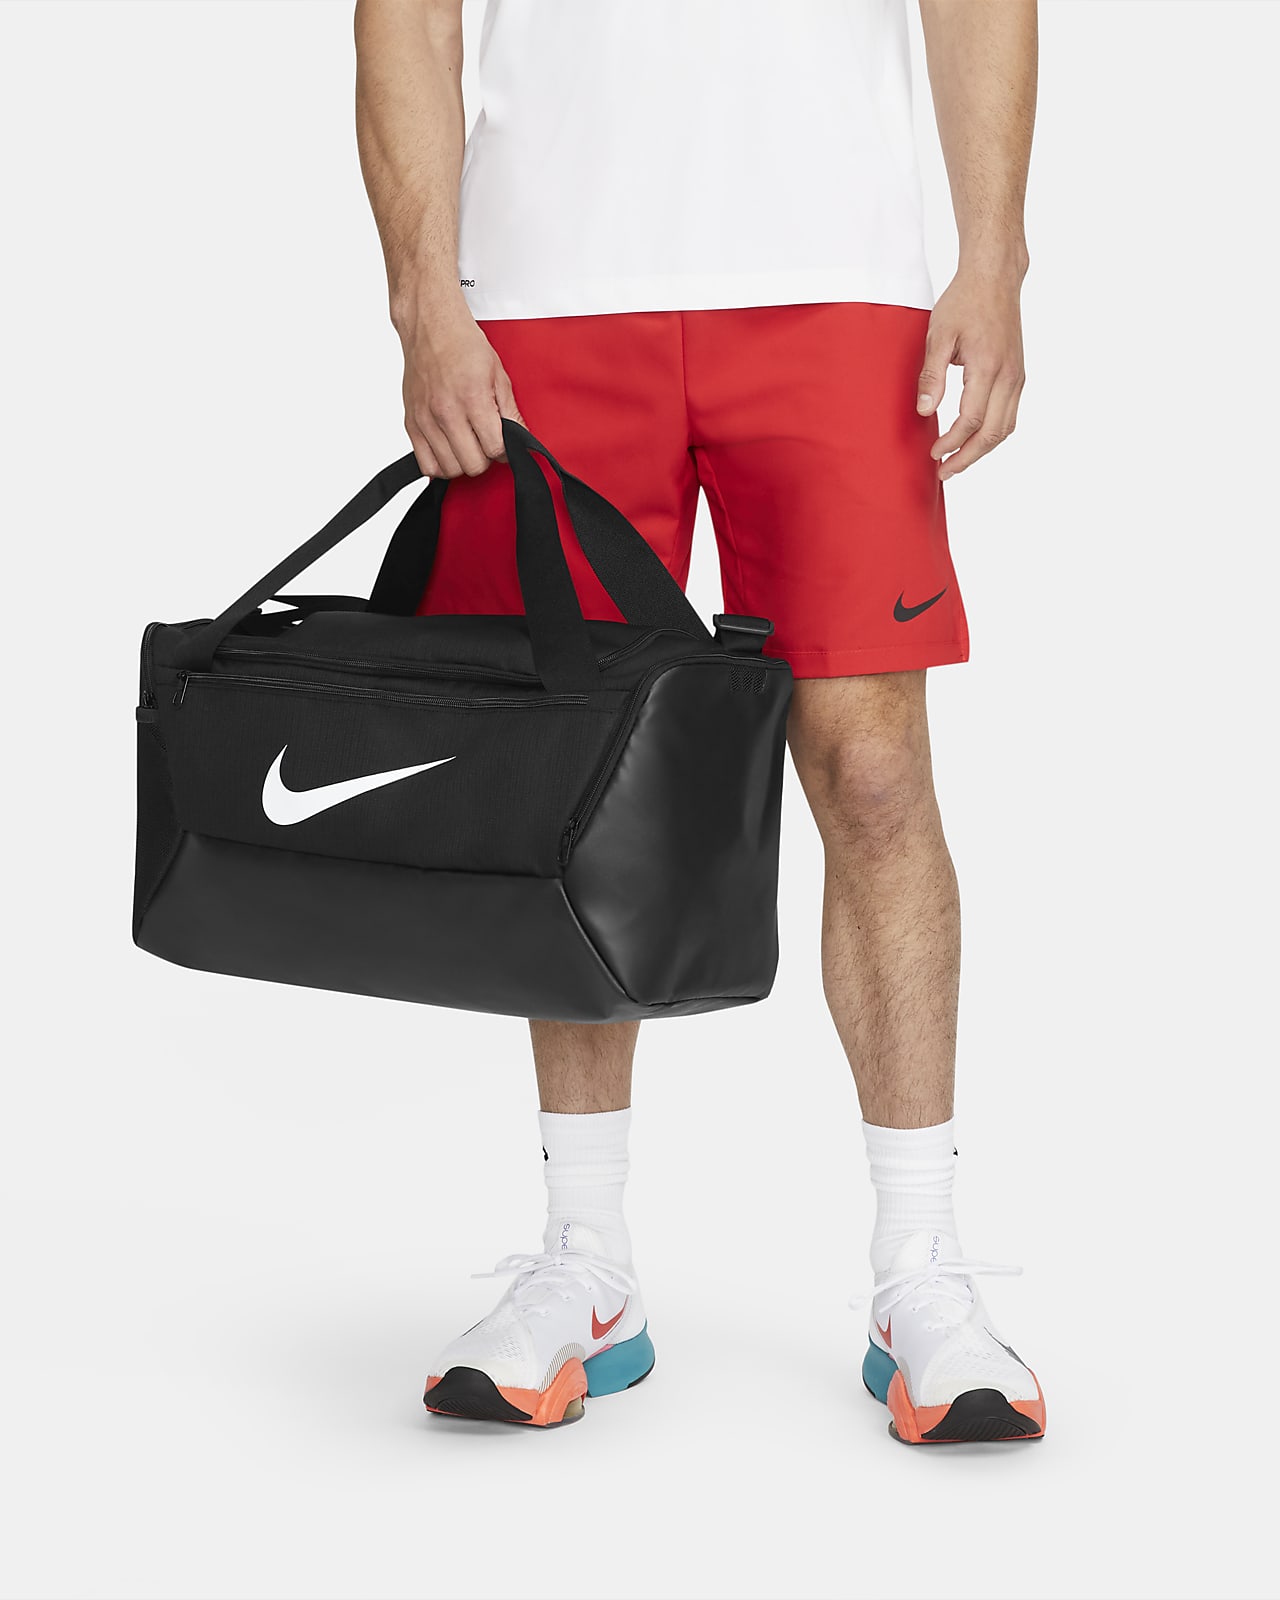 Sac de sport de training Nike Brasilia 9.5 (petite taille, 41 L)